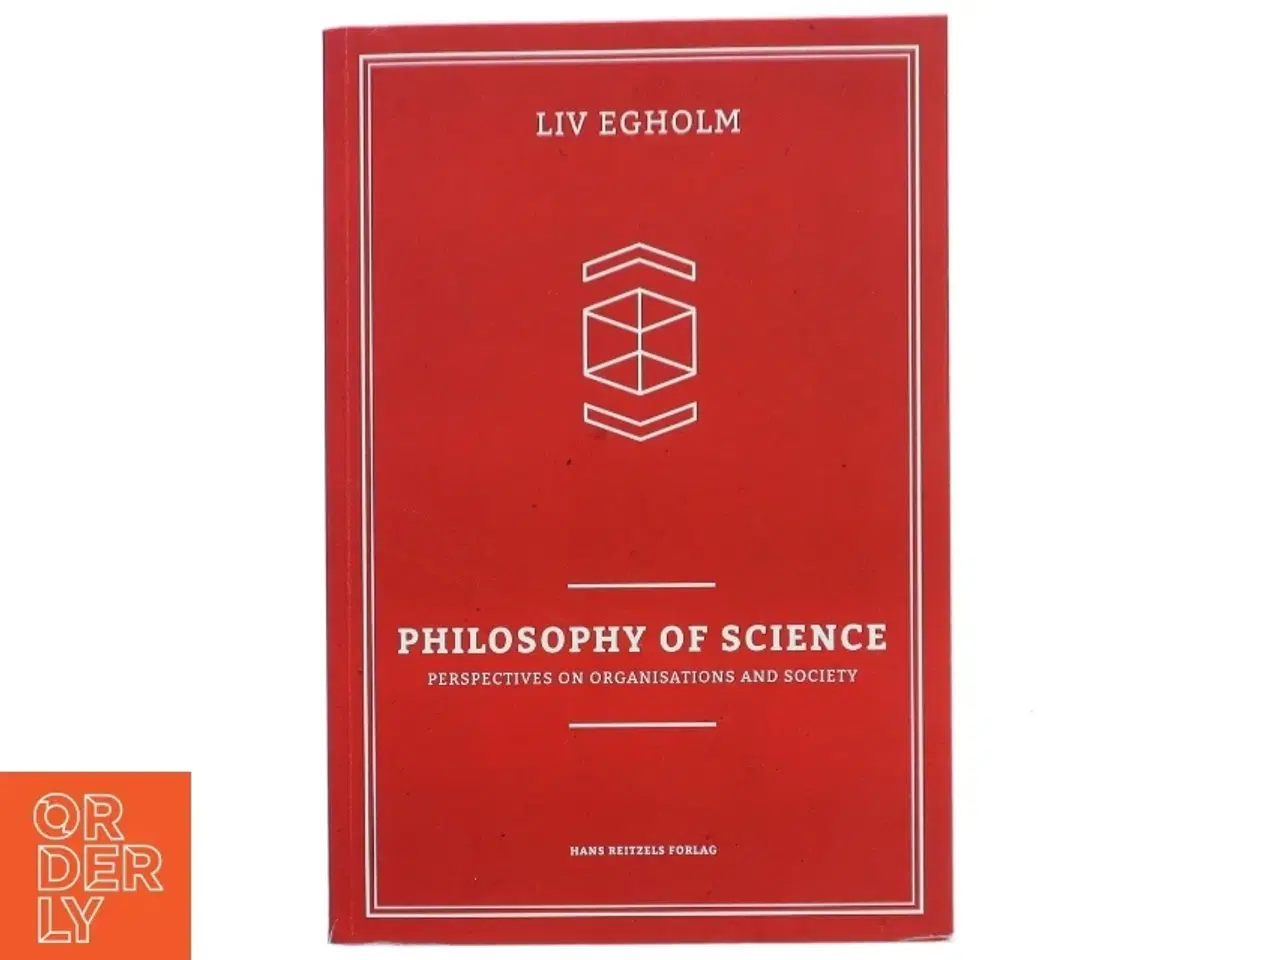 Billede 1 - Philosophy of science : perspectives on organisations and society af Liv Egholm (Bog)